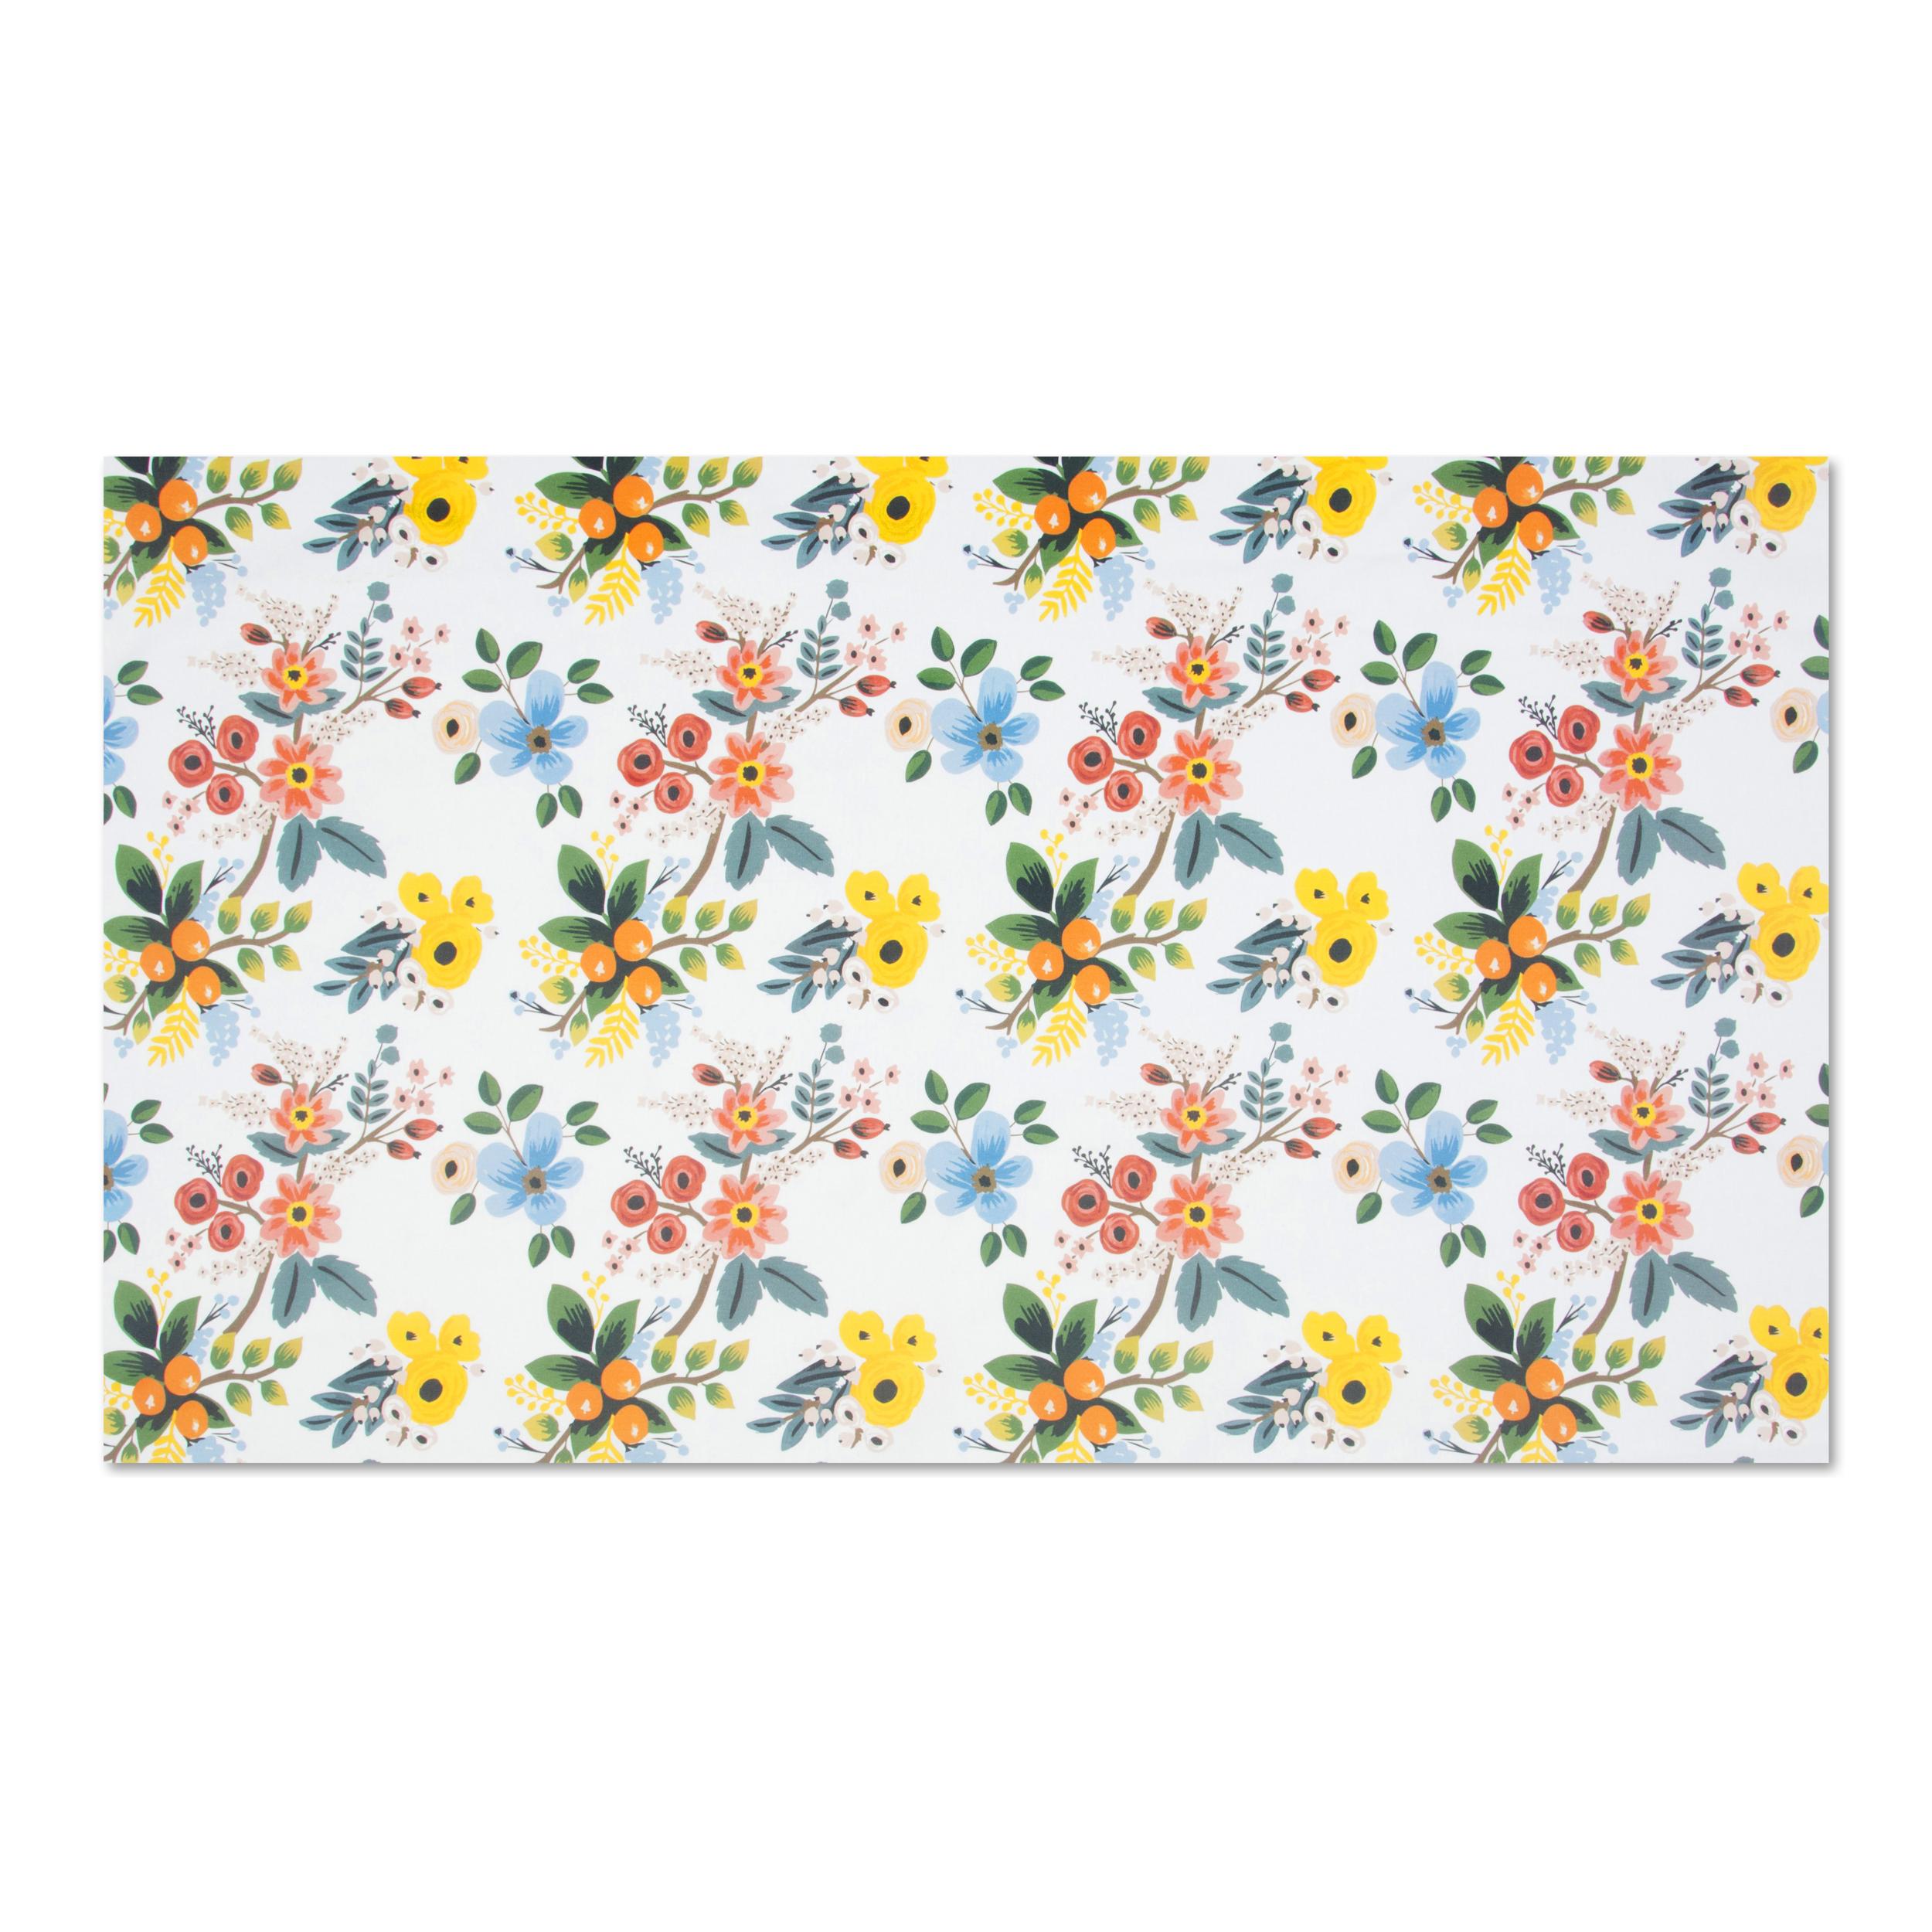 Tovaglia rettangolare Excelsa Fiori Frida, cotone multicolore, 140 x 240 cm